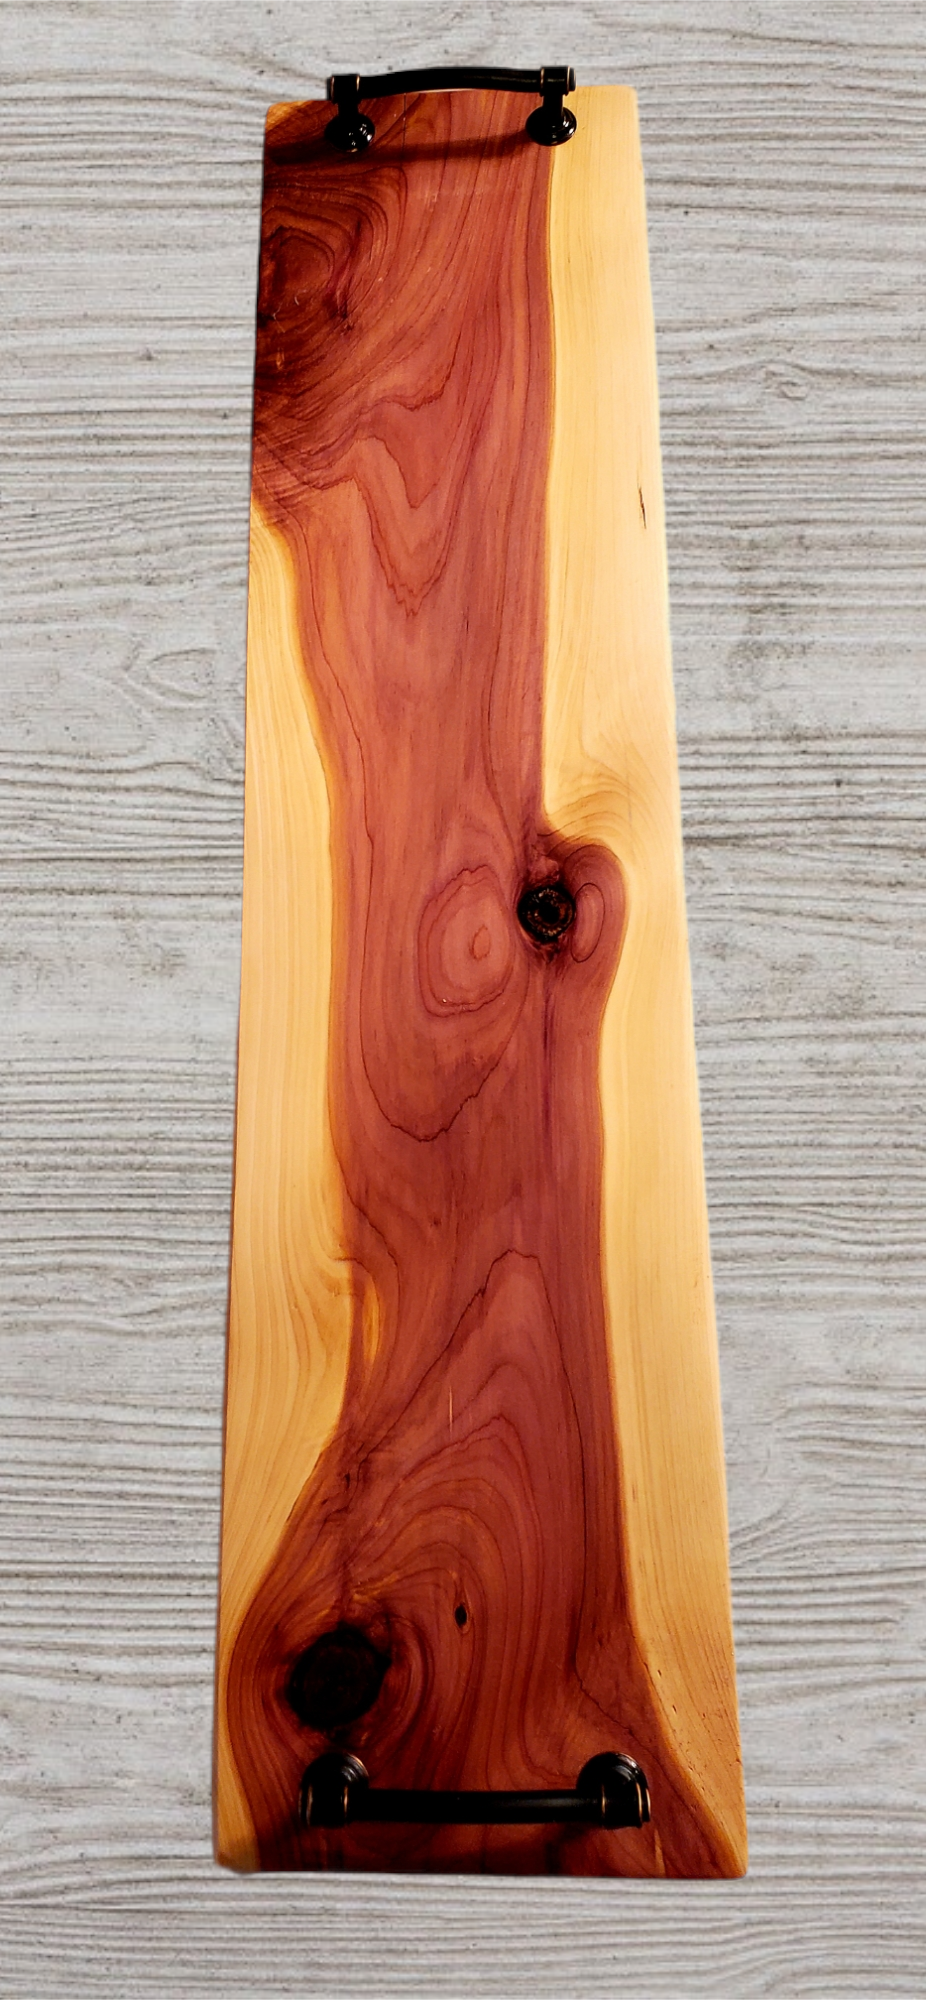 Handcrafted Cedar Cutting/Serving Board - Small - 100% Western Red Cedar